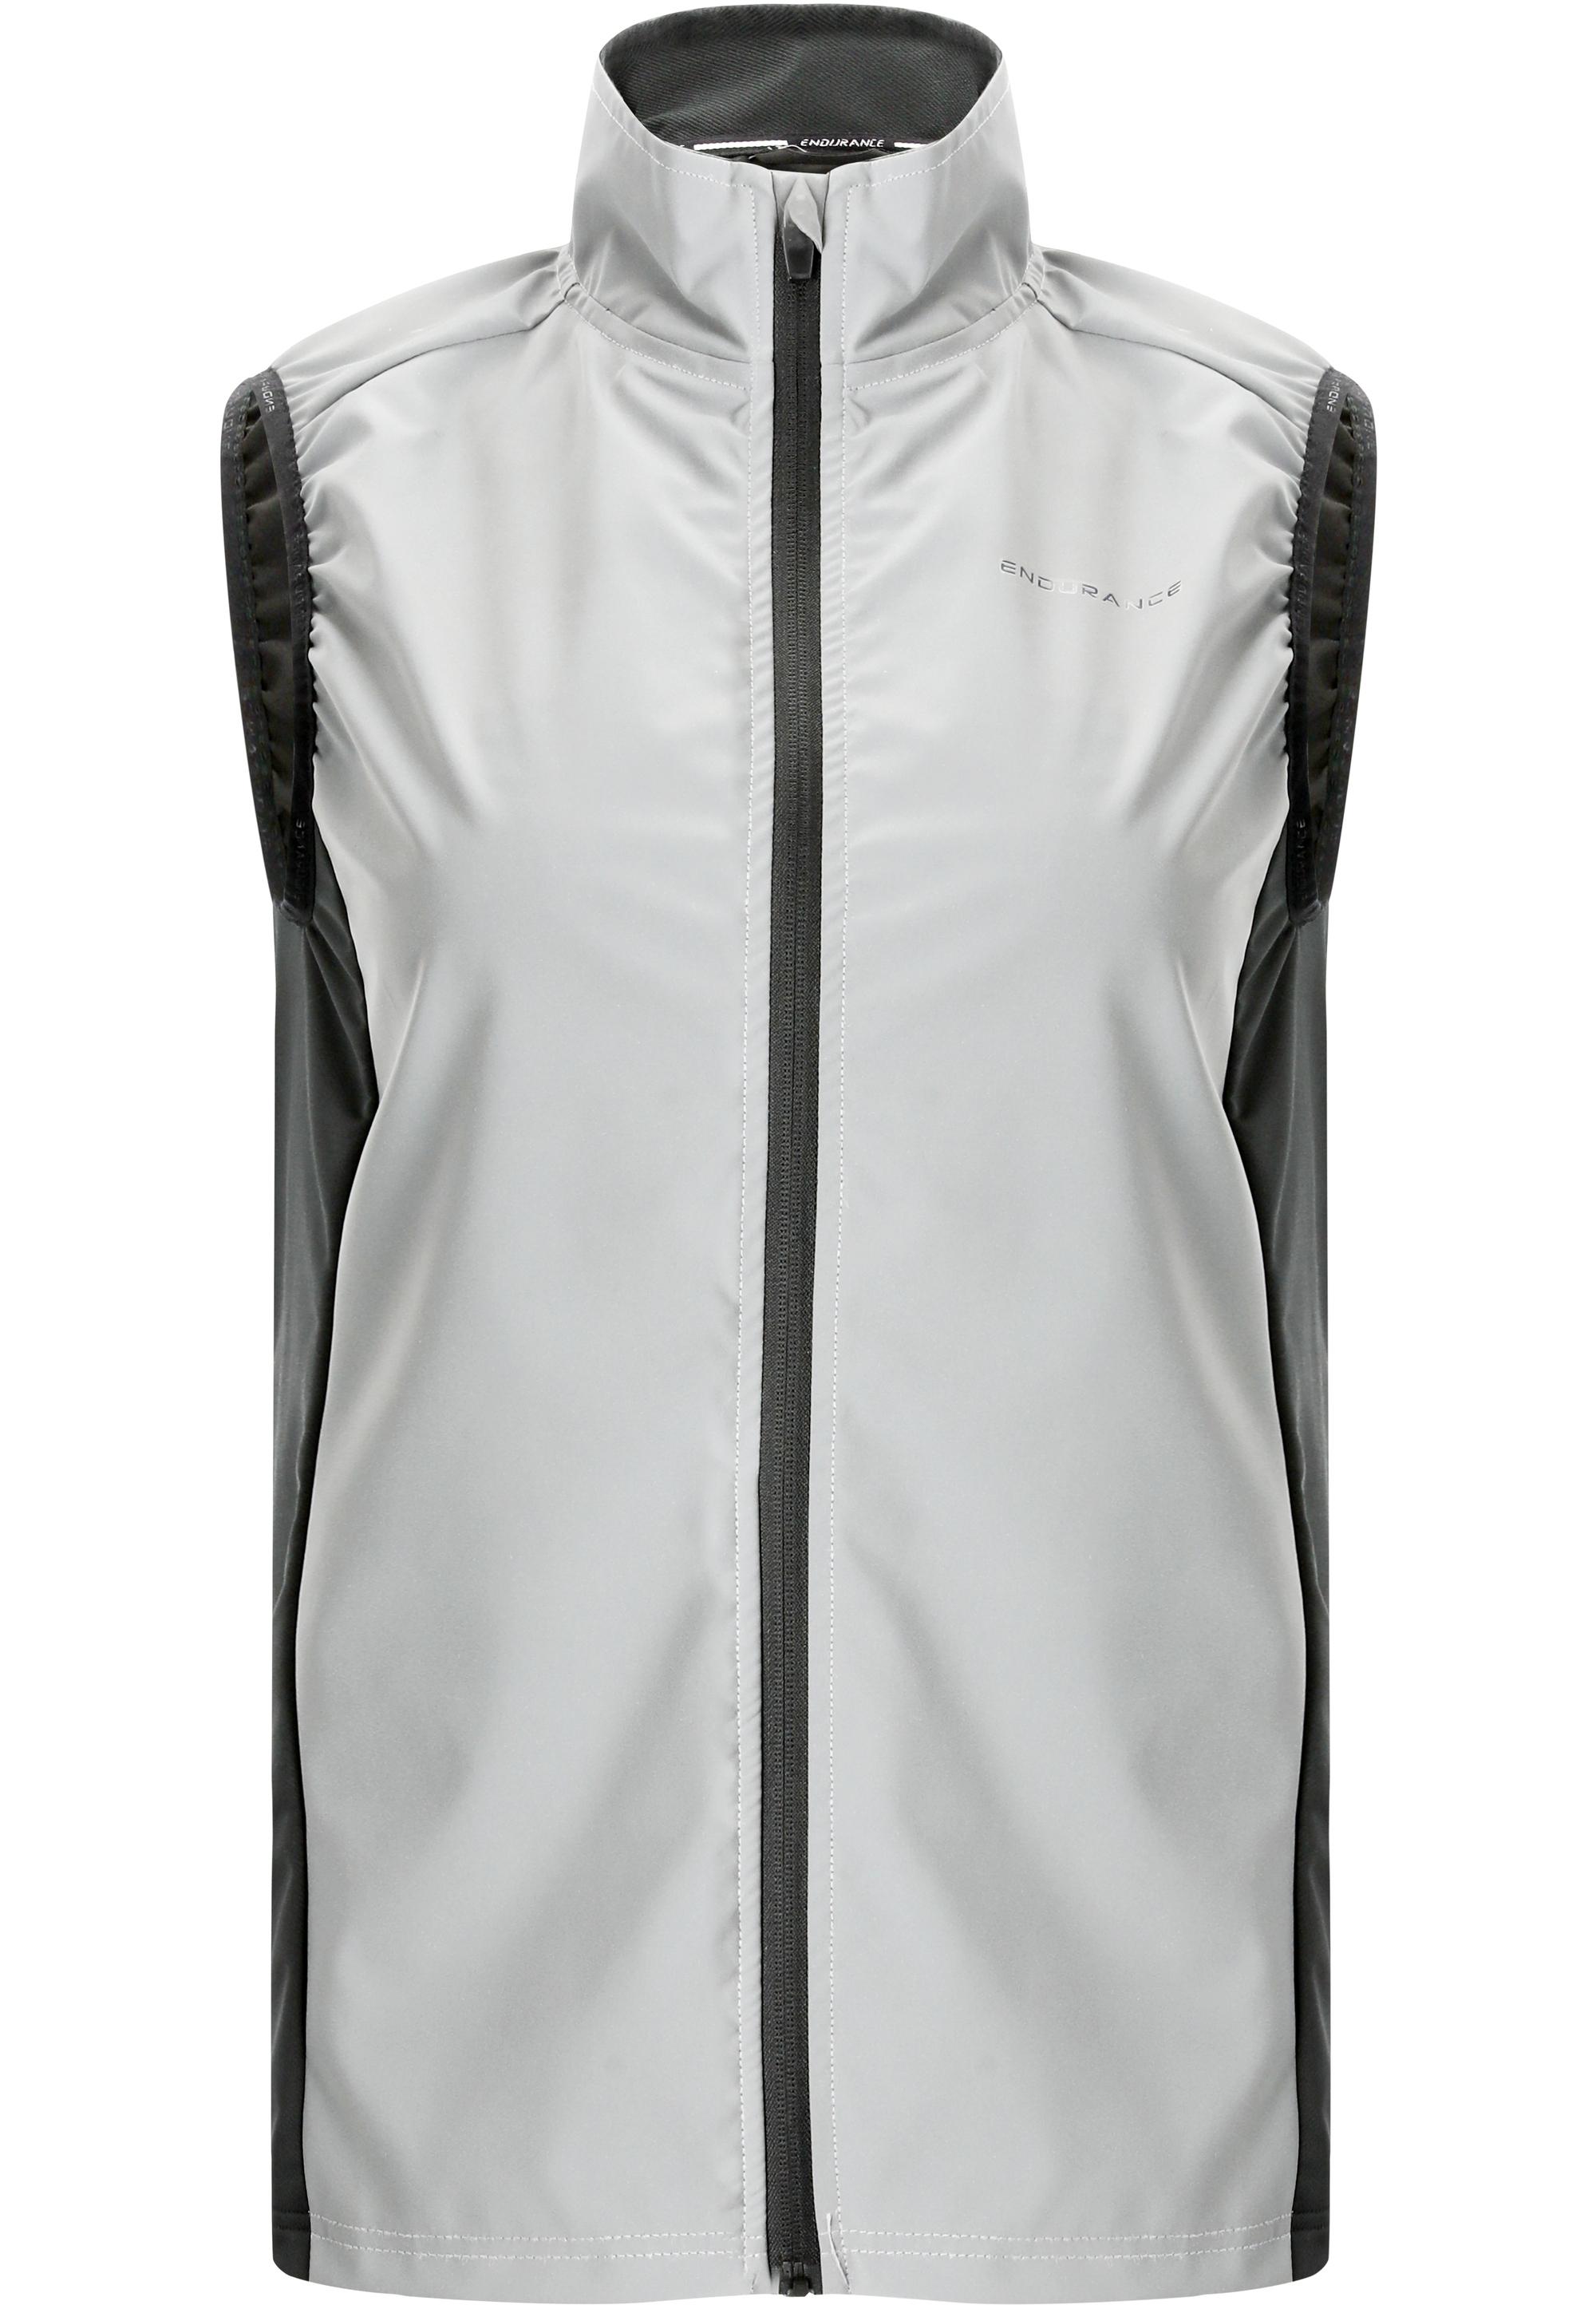 Endurance Rumey W Light Night Shop Vest kaufen Reflex Damen SportScheck Online Laufweste 1018 von im